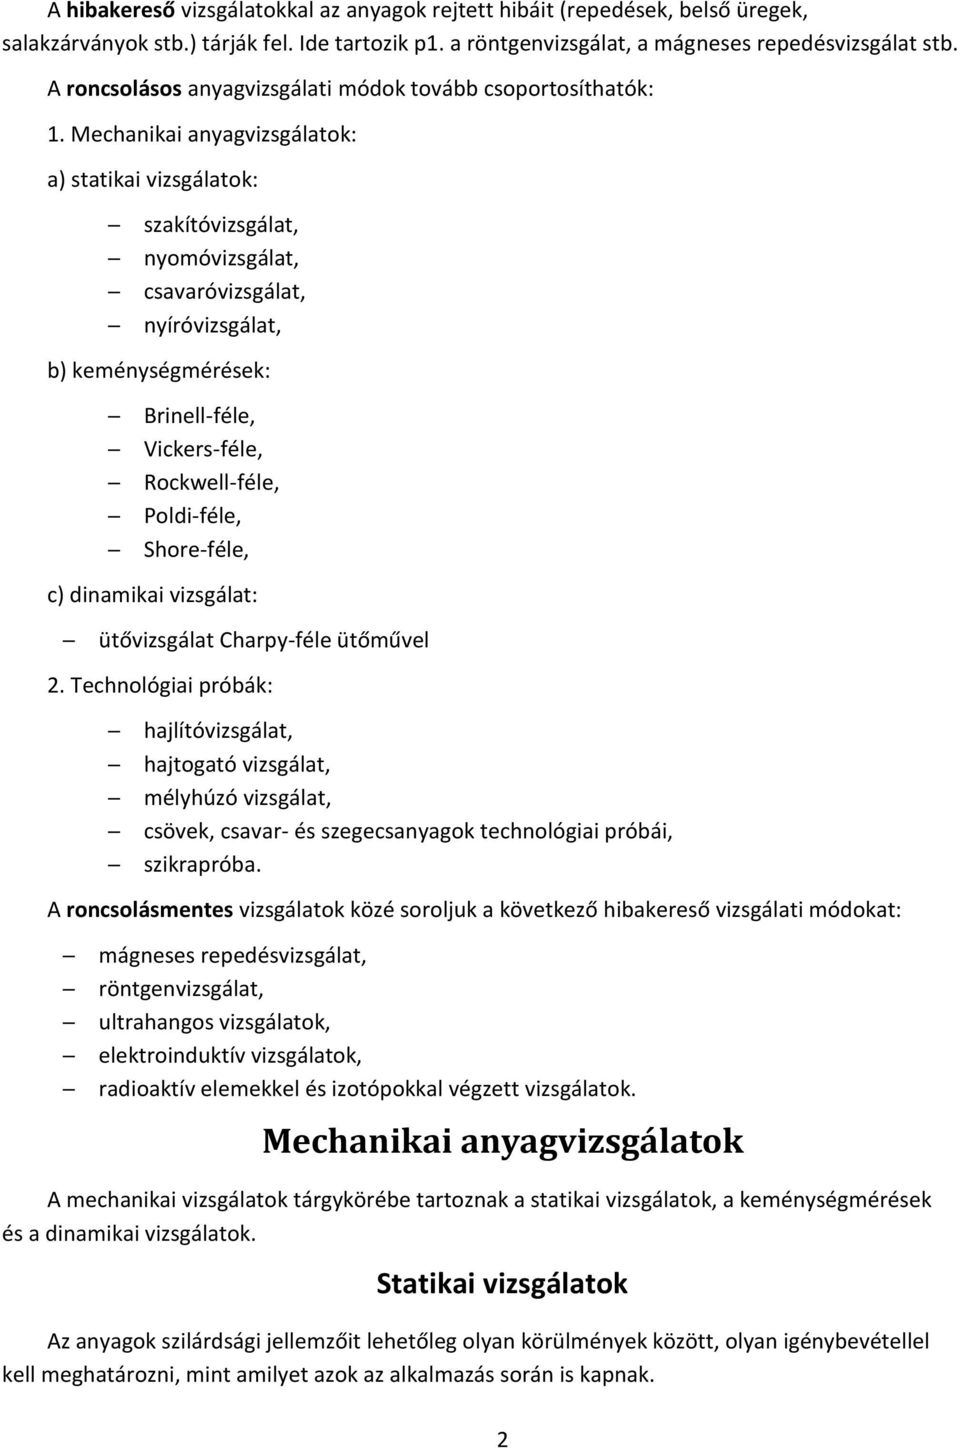 ANYAGVIZSGÁLATOK. Anyagvizsgálati eljárások fajtái - PDF Ingyenes letöltés